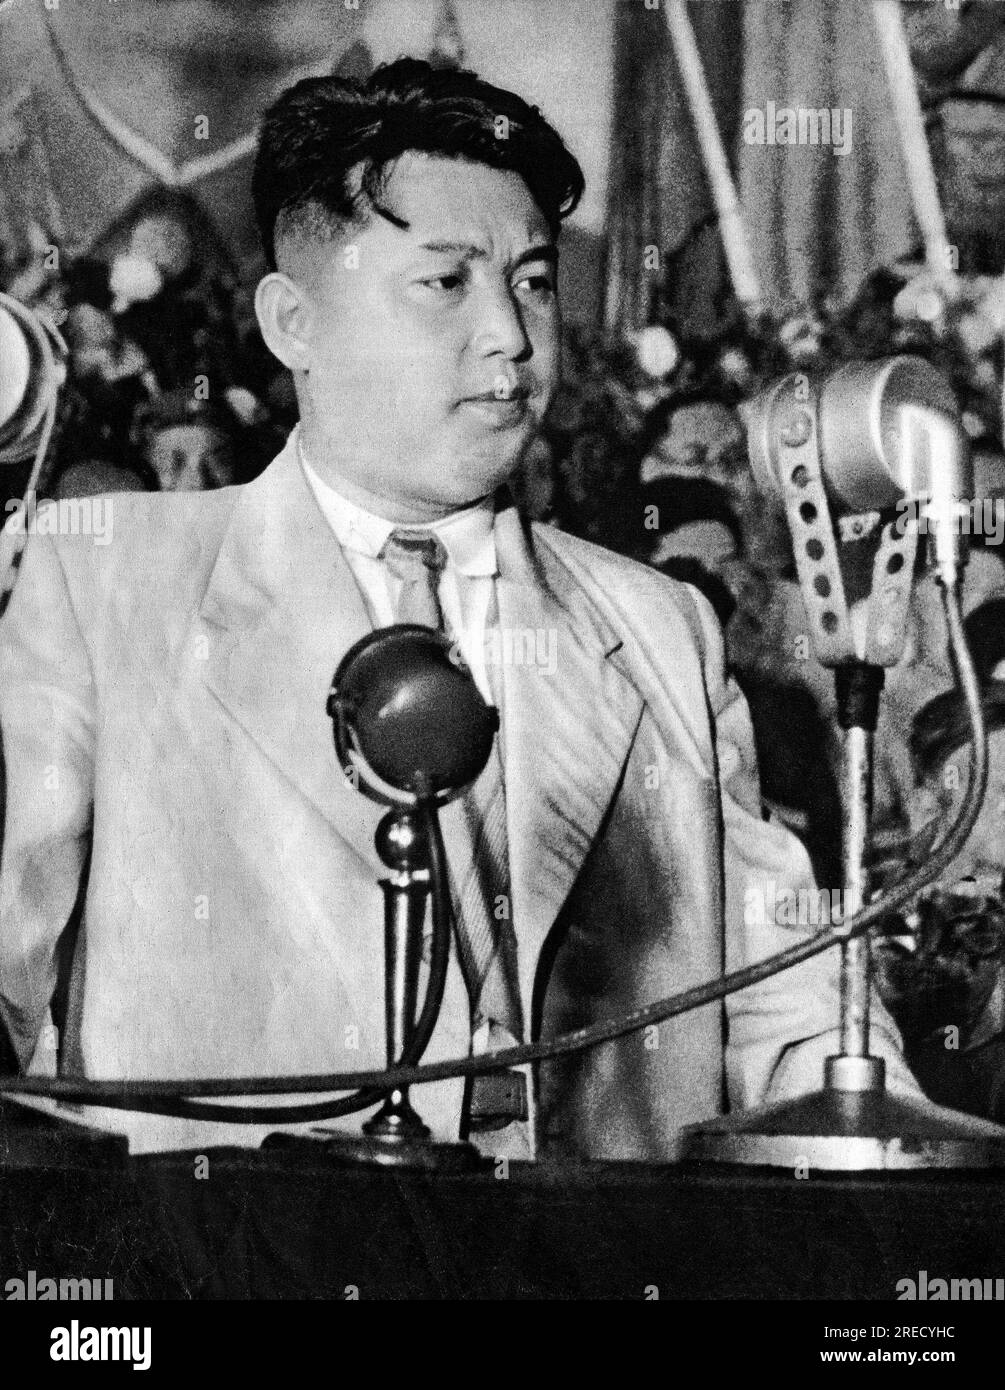 La Guerre de Coree (1950-1953), portrait de Kim il Sung (Kim il-sung) (1912-1994), homme d'État et marechal nord coreen, en 1950, in 'la Guerre de Coree', Chine, 1959, coll. Selva (Portrait de Kim il Sung, président de la République populaire démocratique de Corée (Corée du Nord), en 1950, extrait de 'guerre de Corée', Chine 1959) Banque D'Images